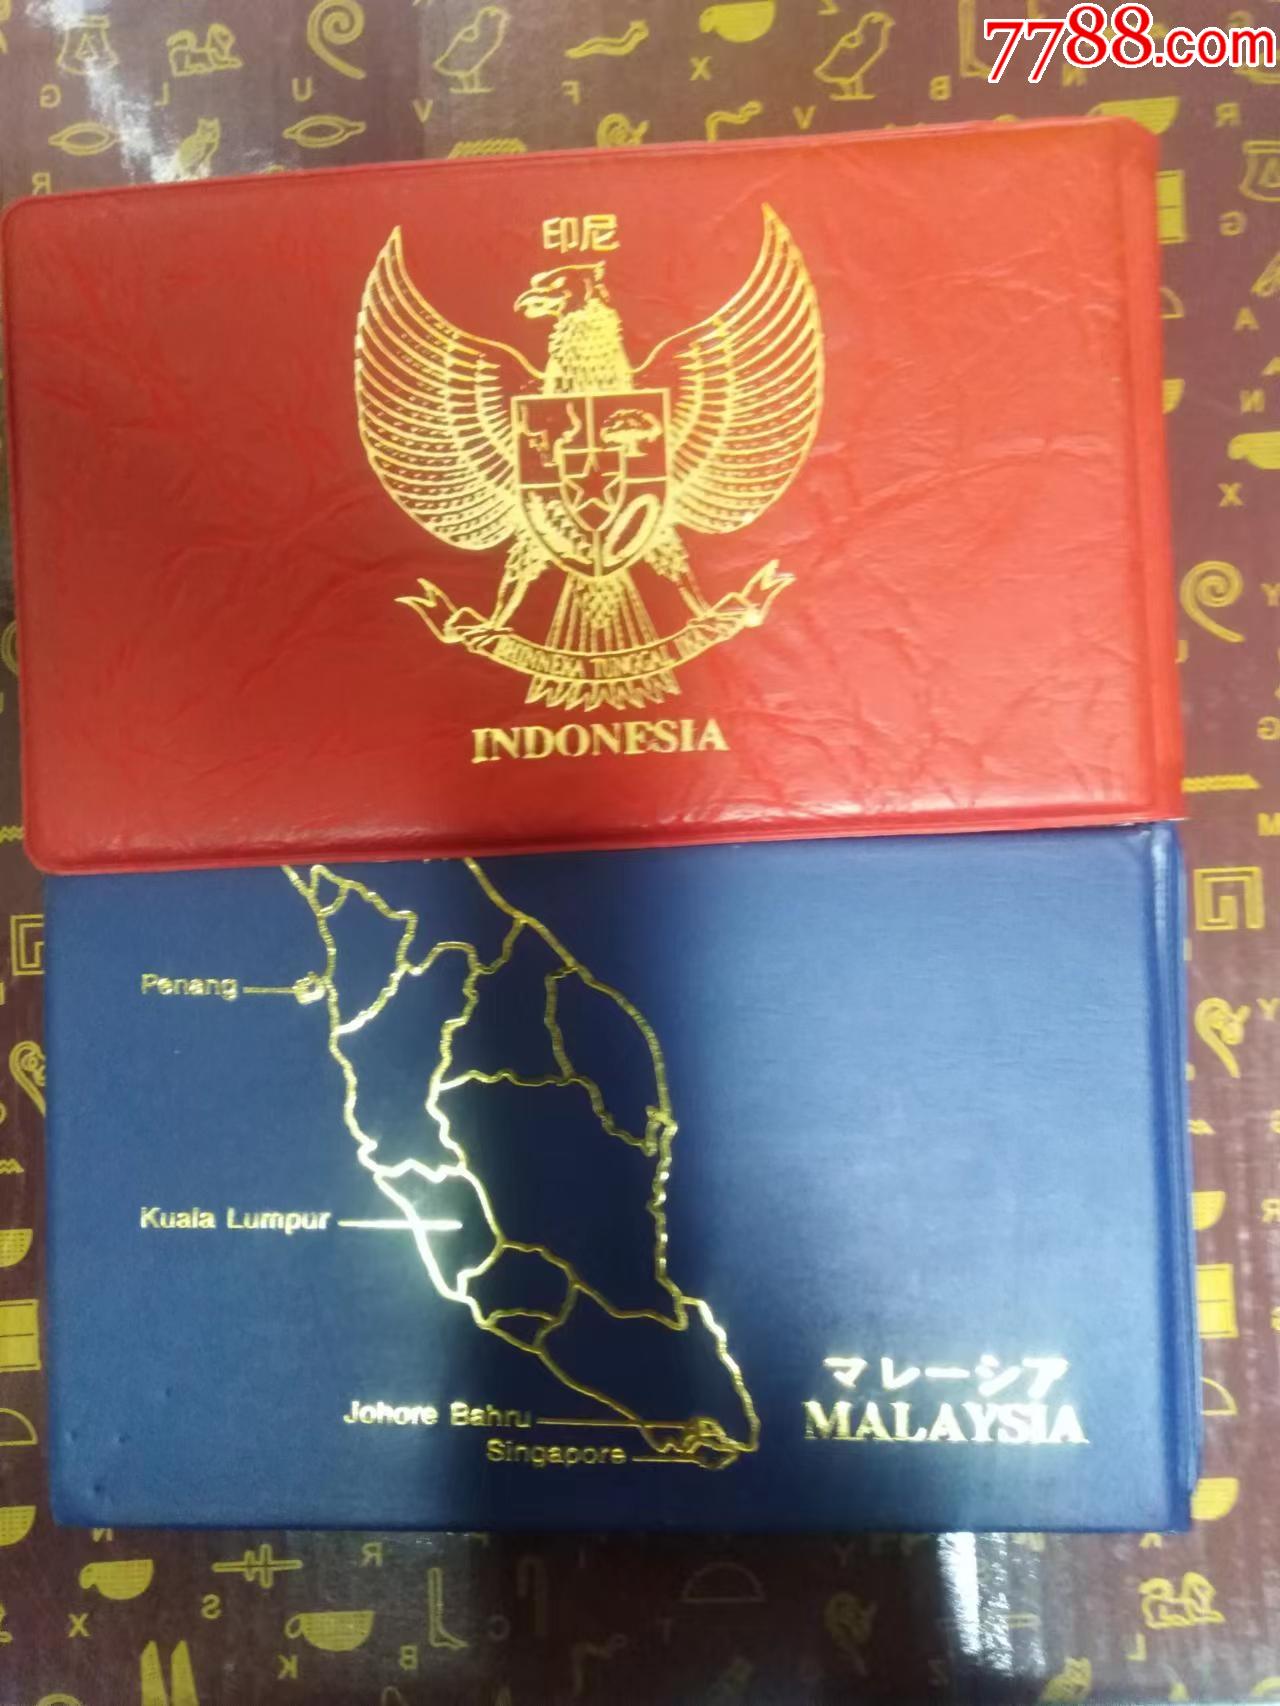 马来西亚硬币 库存图片. 图片 包括有 横幅提供资金的, 金属, 新建, 现金, 财务, 聚会所, 来回 - 88774443